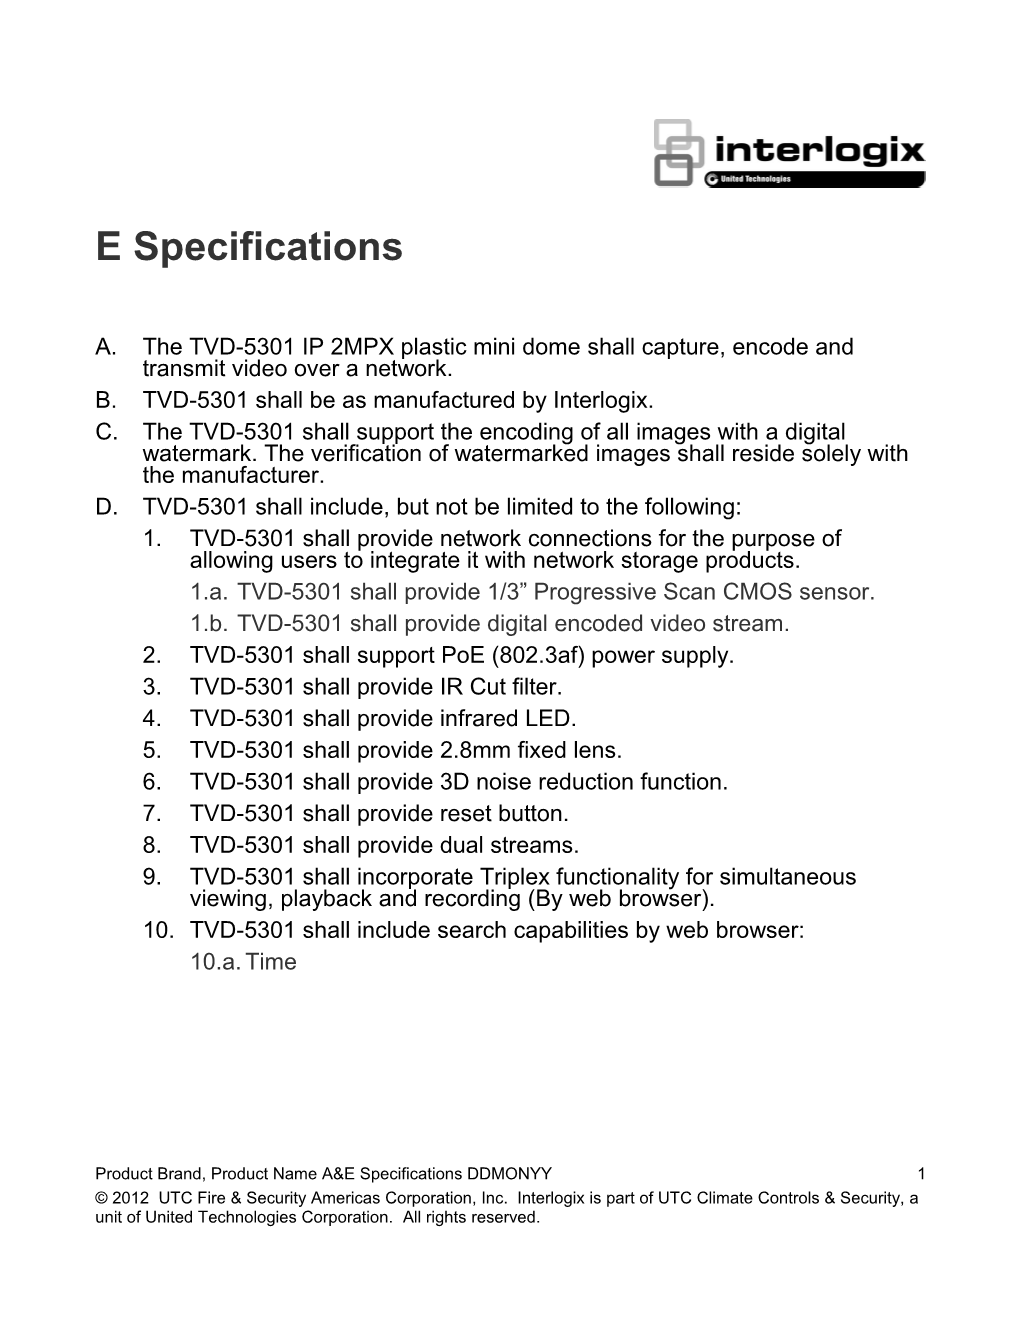 TVD-5301 H.264 IP 2MPX Plastic Mini Dome A&E Specifications